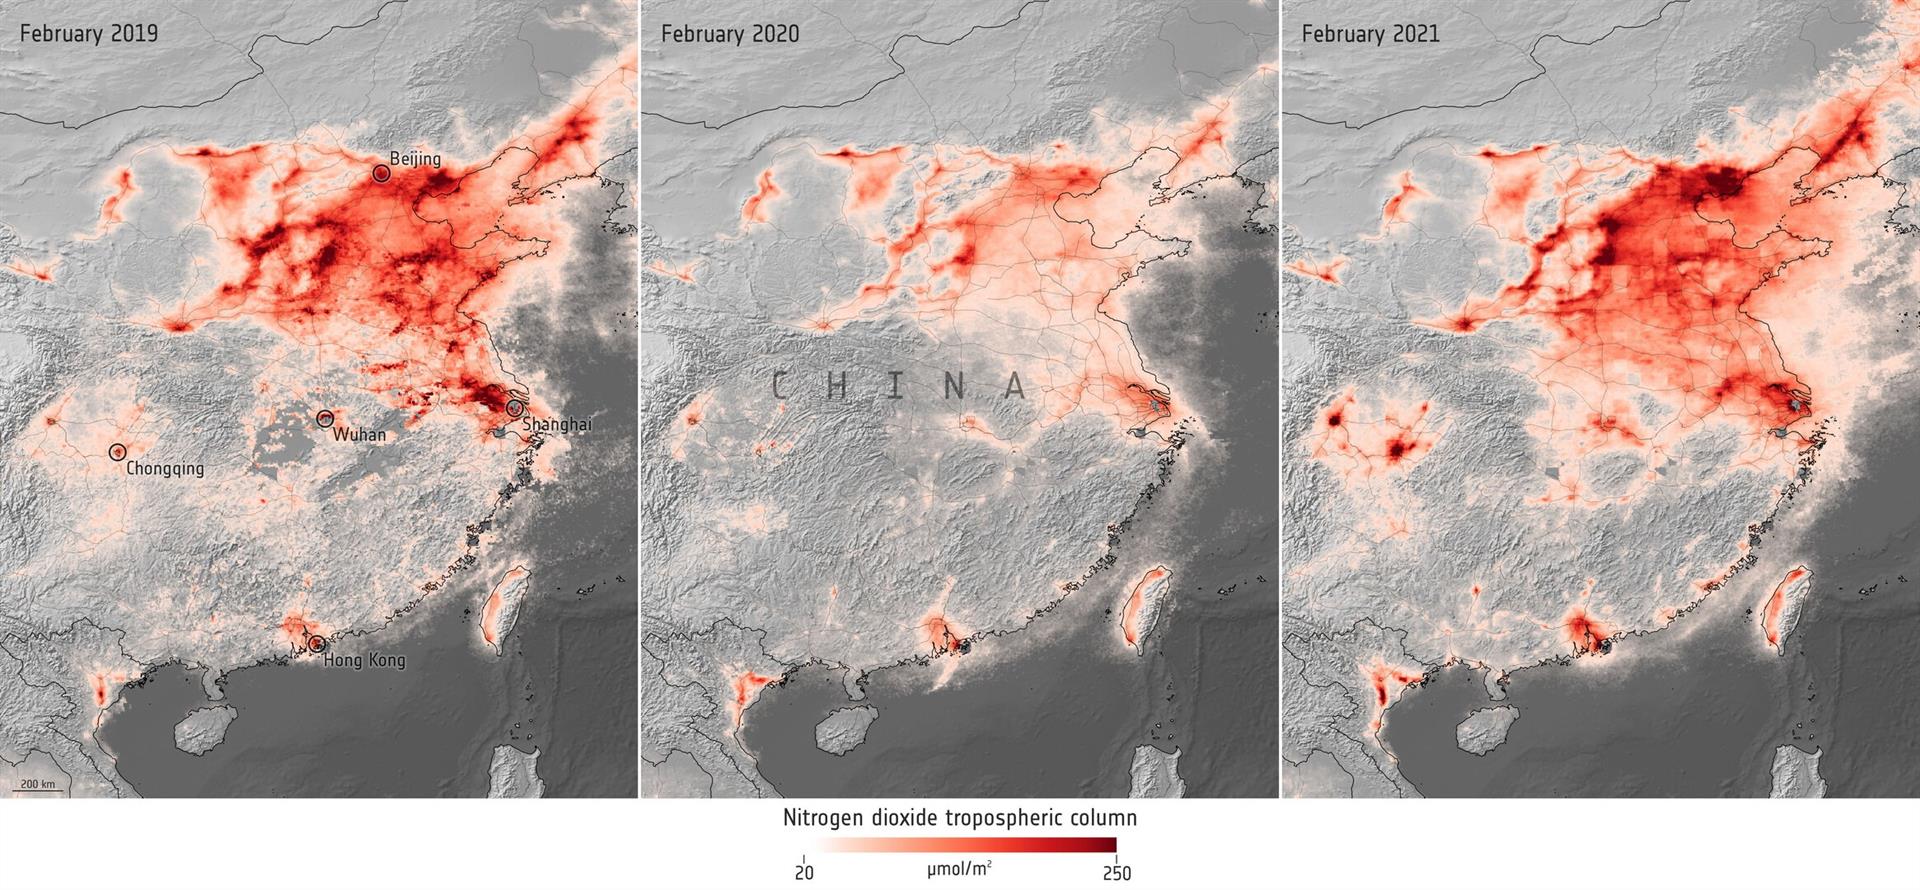 Concentraciones de diòxido de nitrógeno sobre China antes y durante la pandemia de la COVID-19 / Imagen: ESA  (Agencia Espacial Europea)